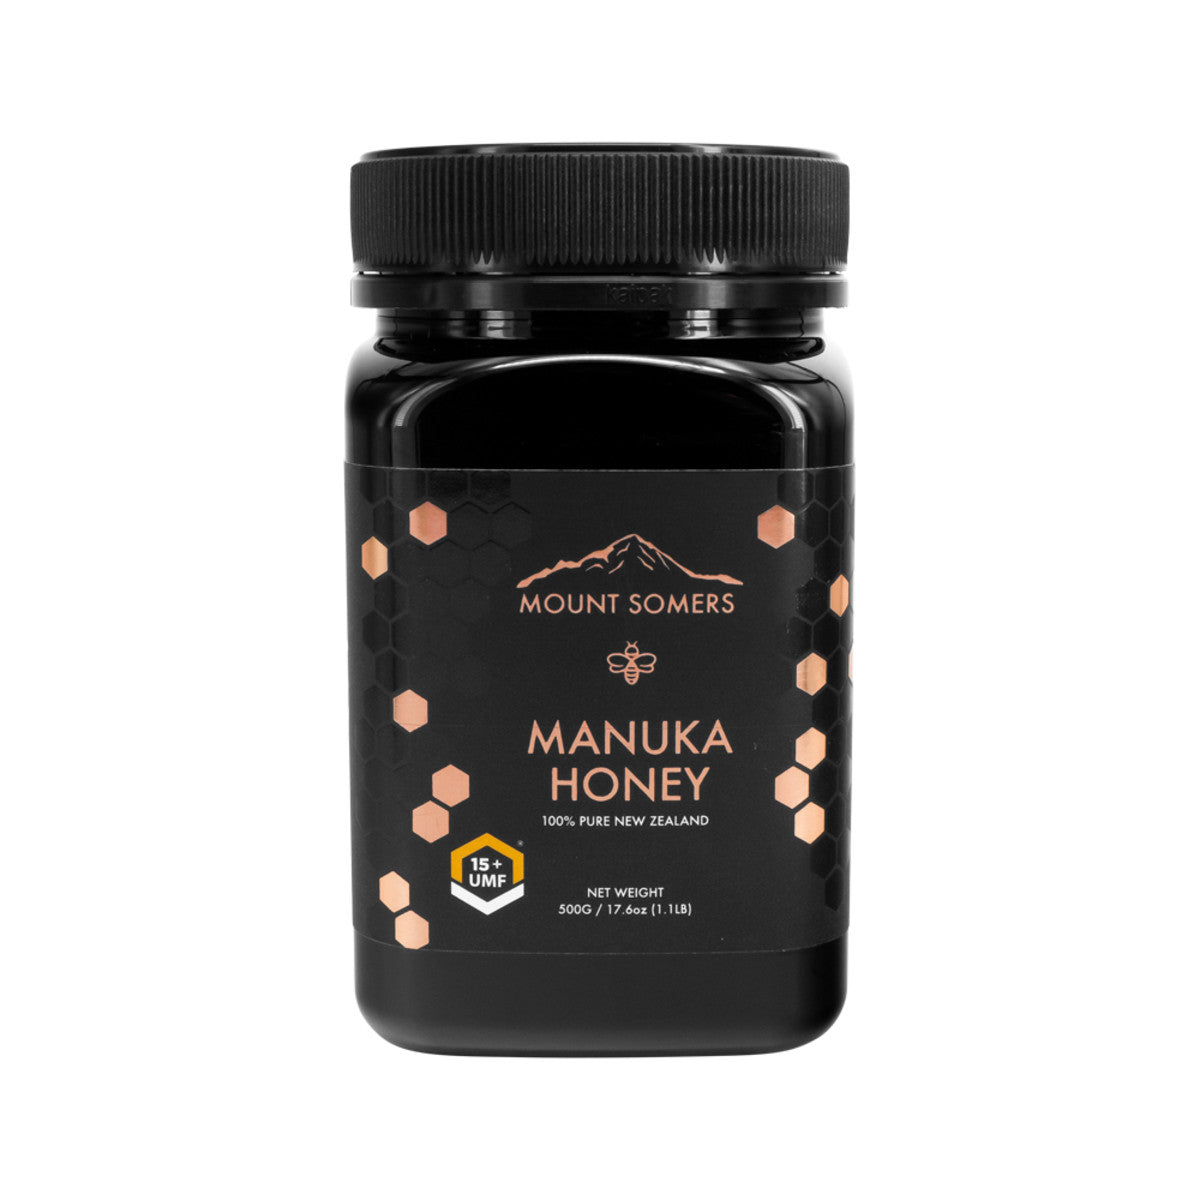 Mount Somers - Manuka Honey UMF15 Plus